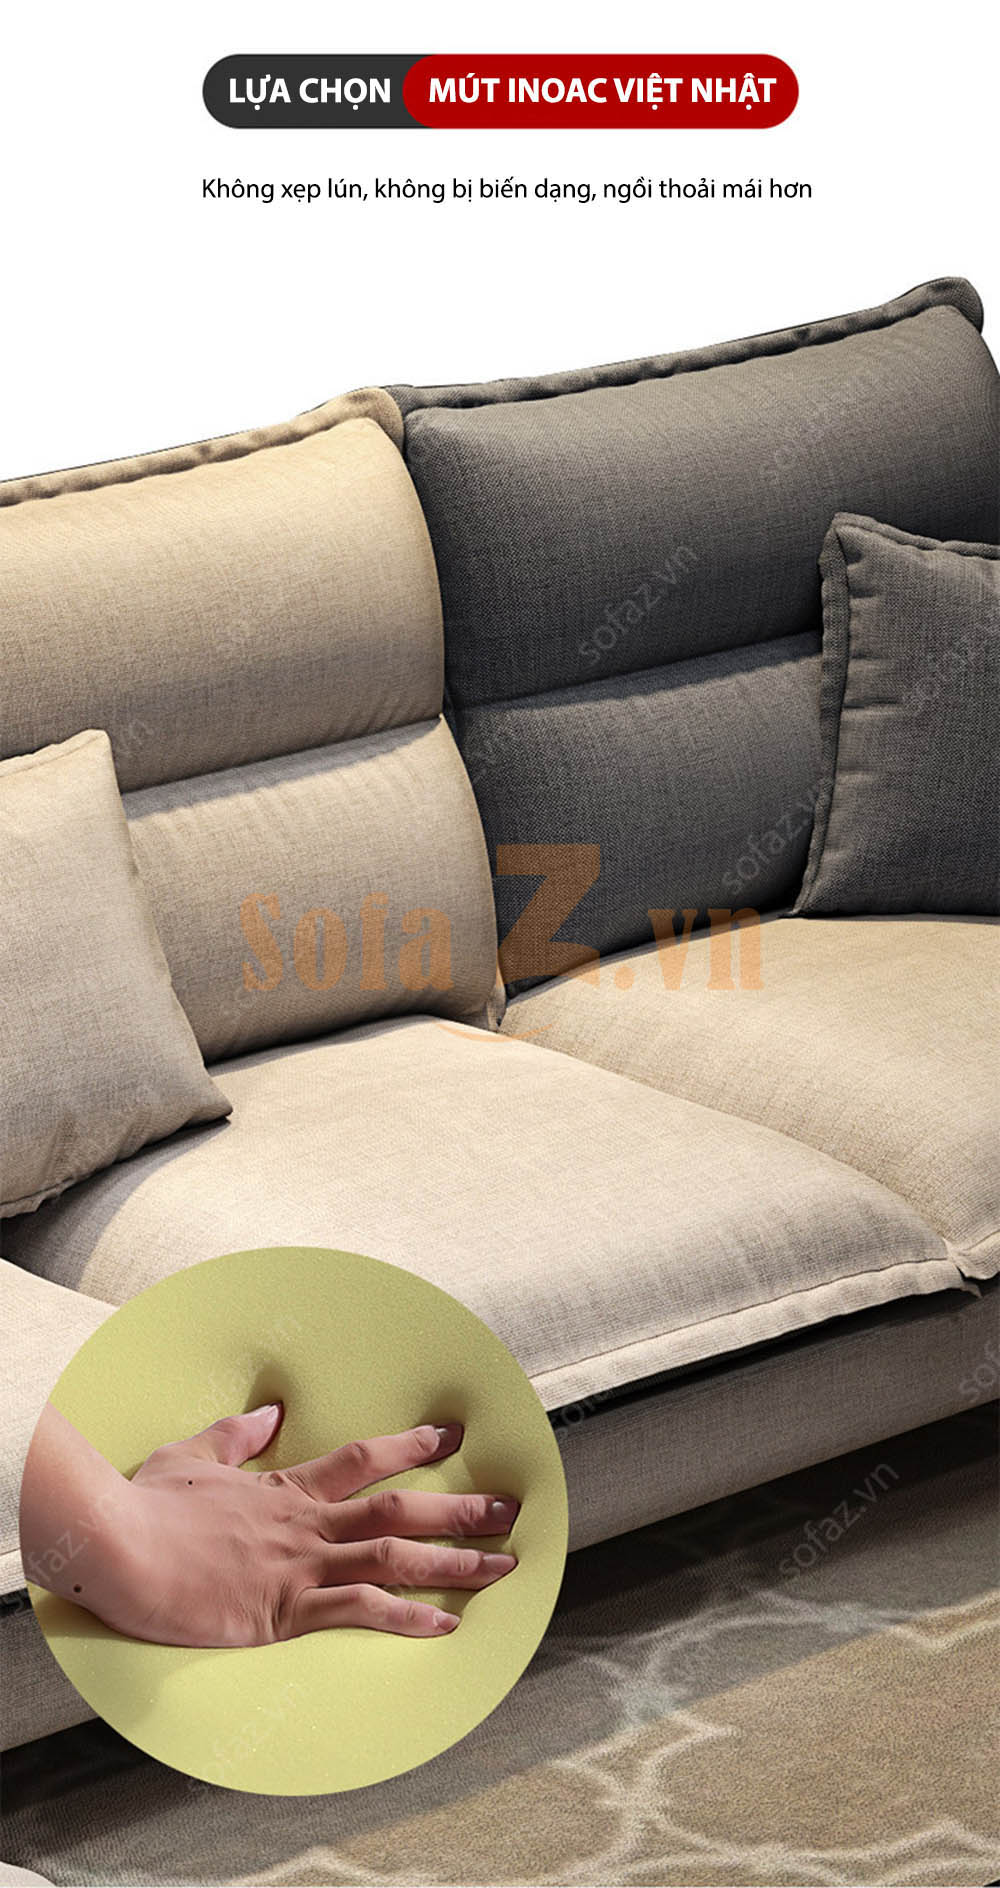 Sofa phòng khách GD526 - Sofa góc Cront